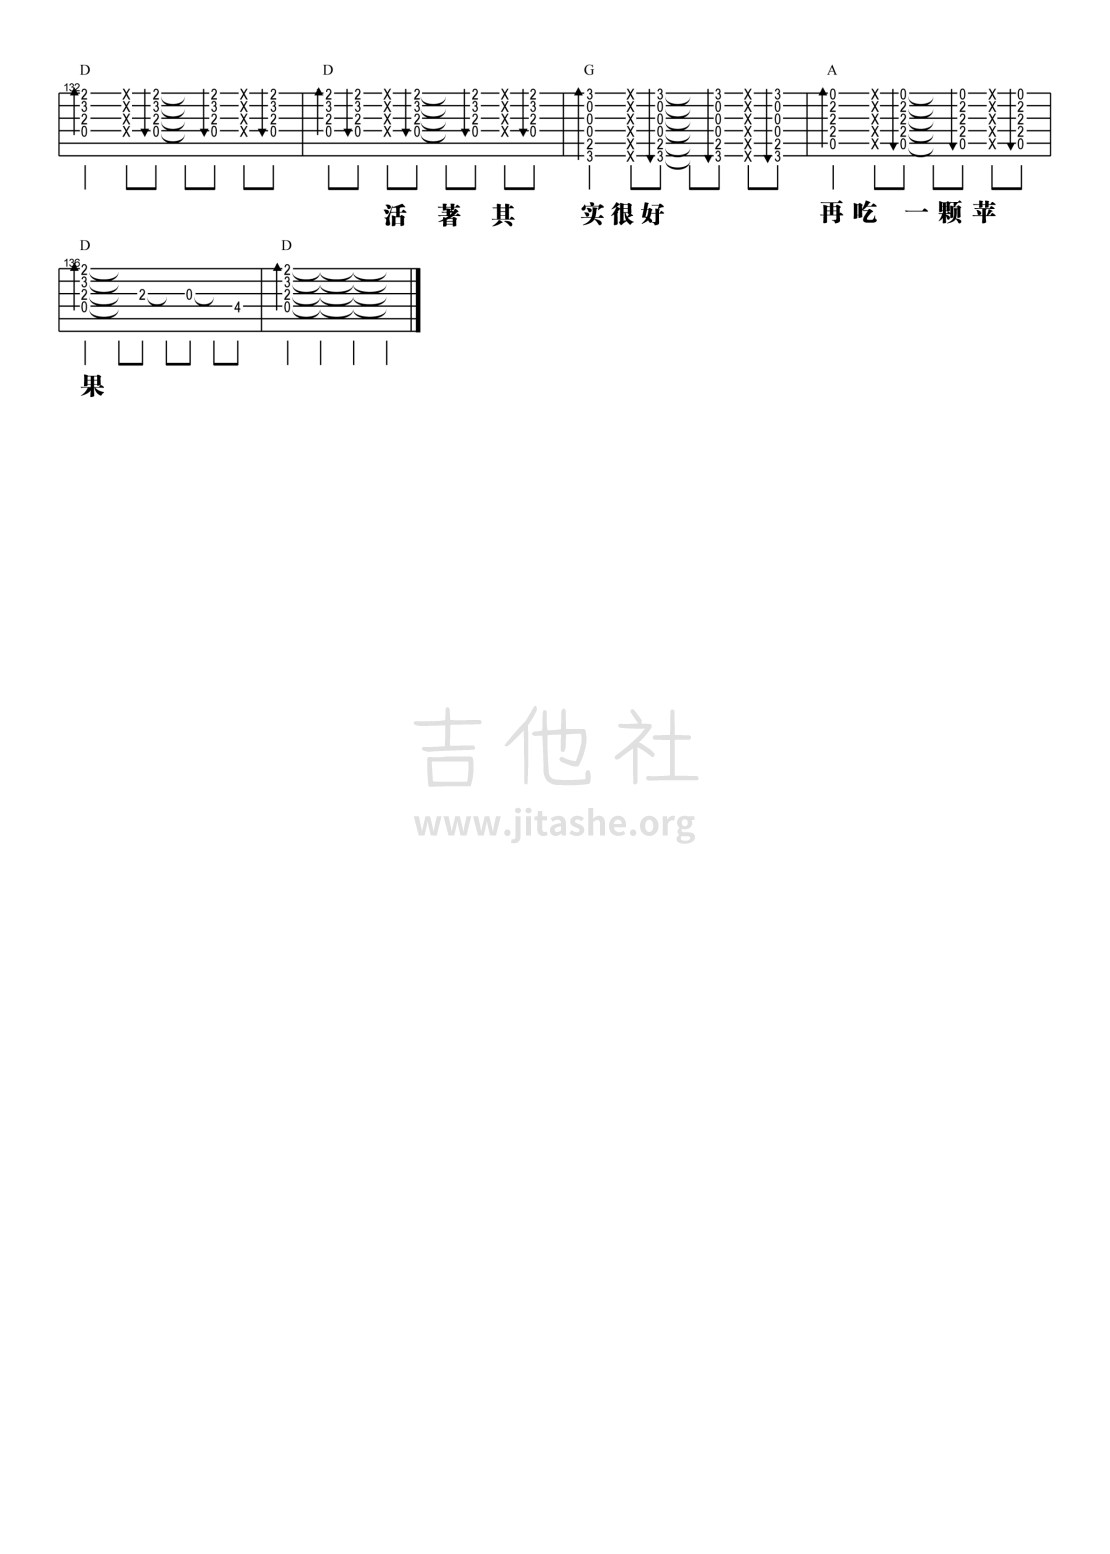 打印:【阿信乐器】#23 五月天《一颗苹果》吉他教学吉他谱_五月天(Mayday)_5.jpg